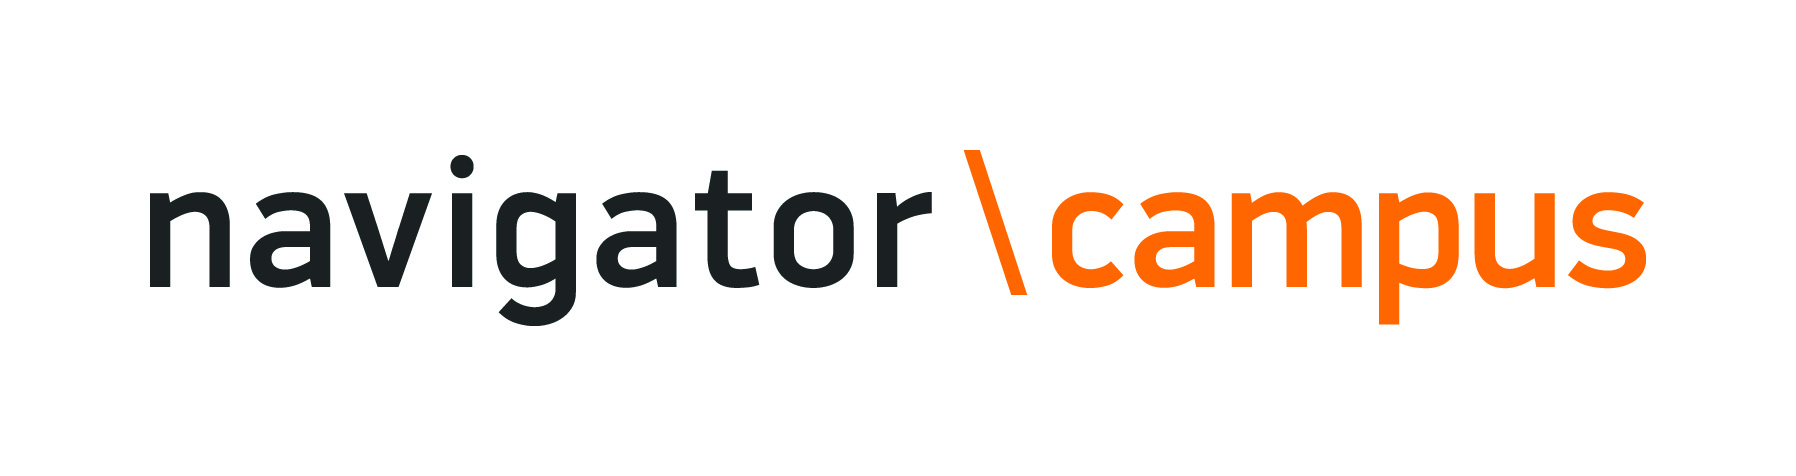 Logo-navigator-main.jpg